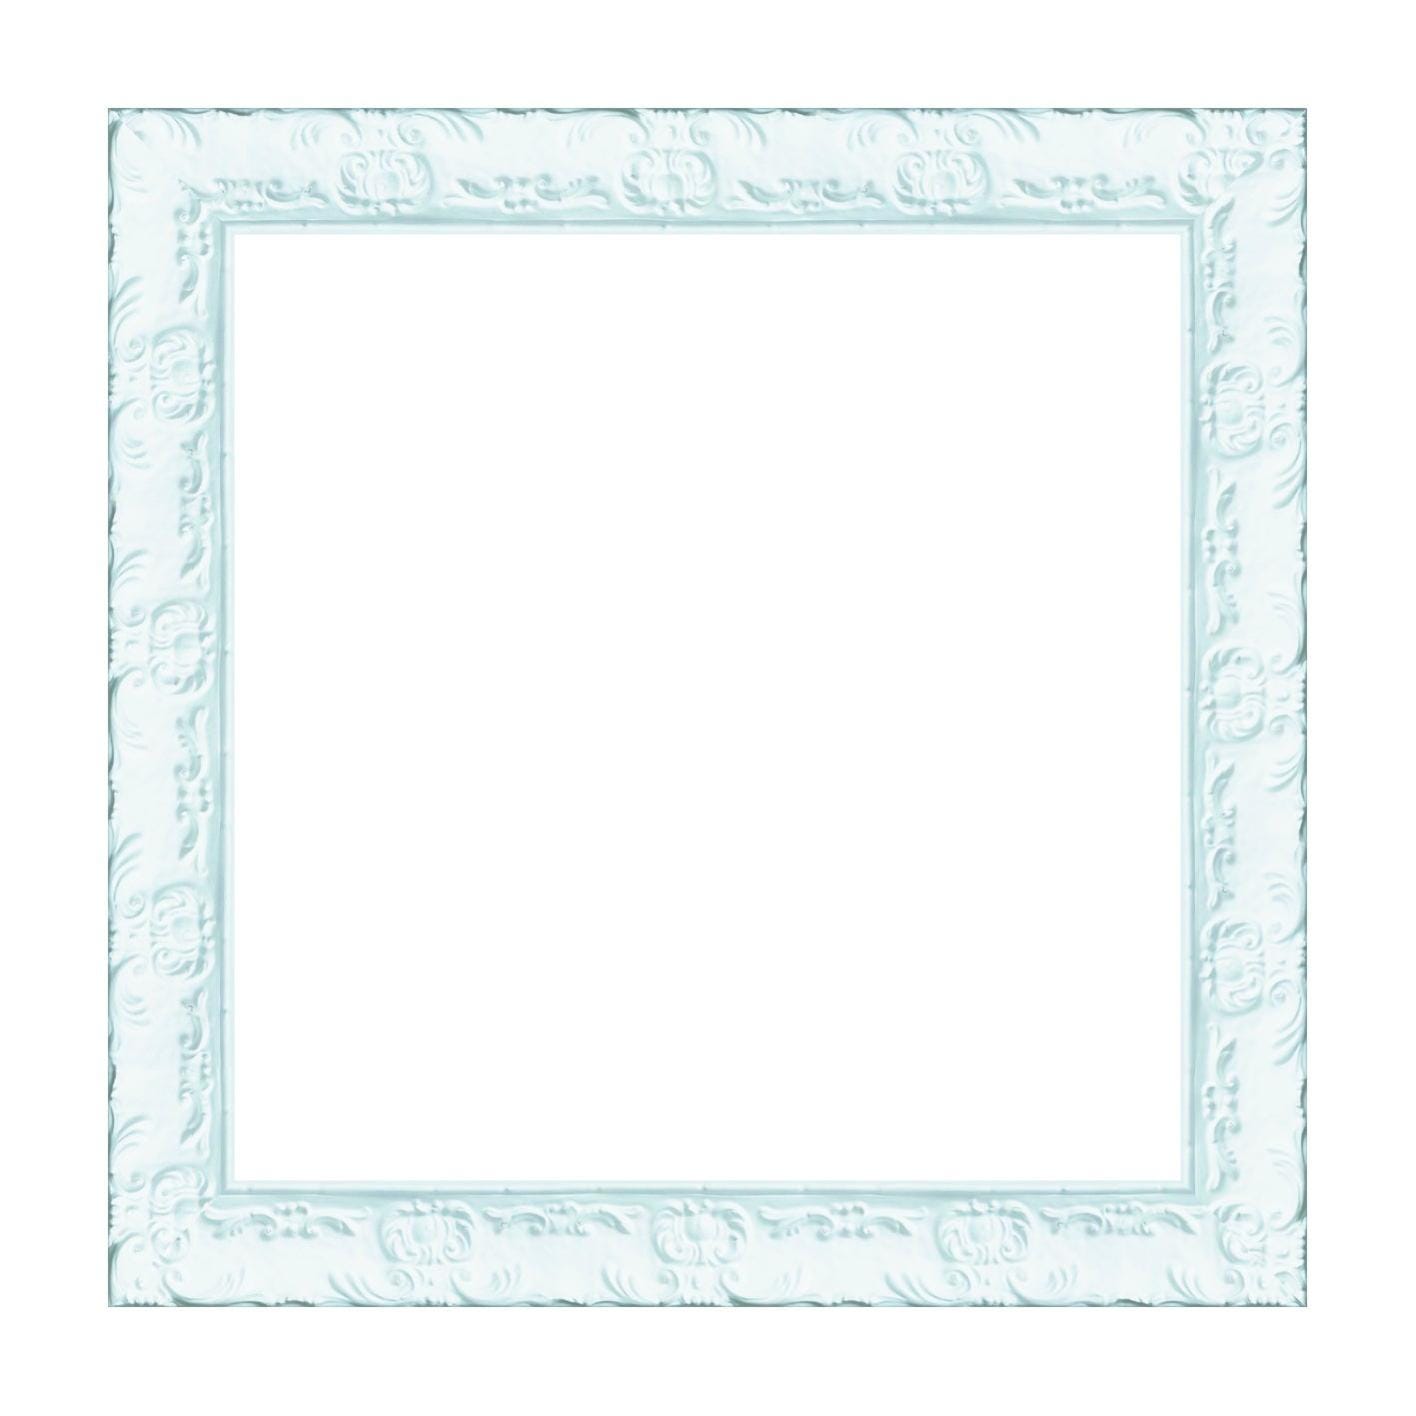 Cornice INSPIRE Lila bianco lucido per foto da 50x70 cm